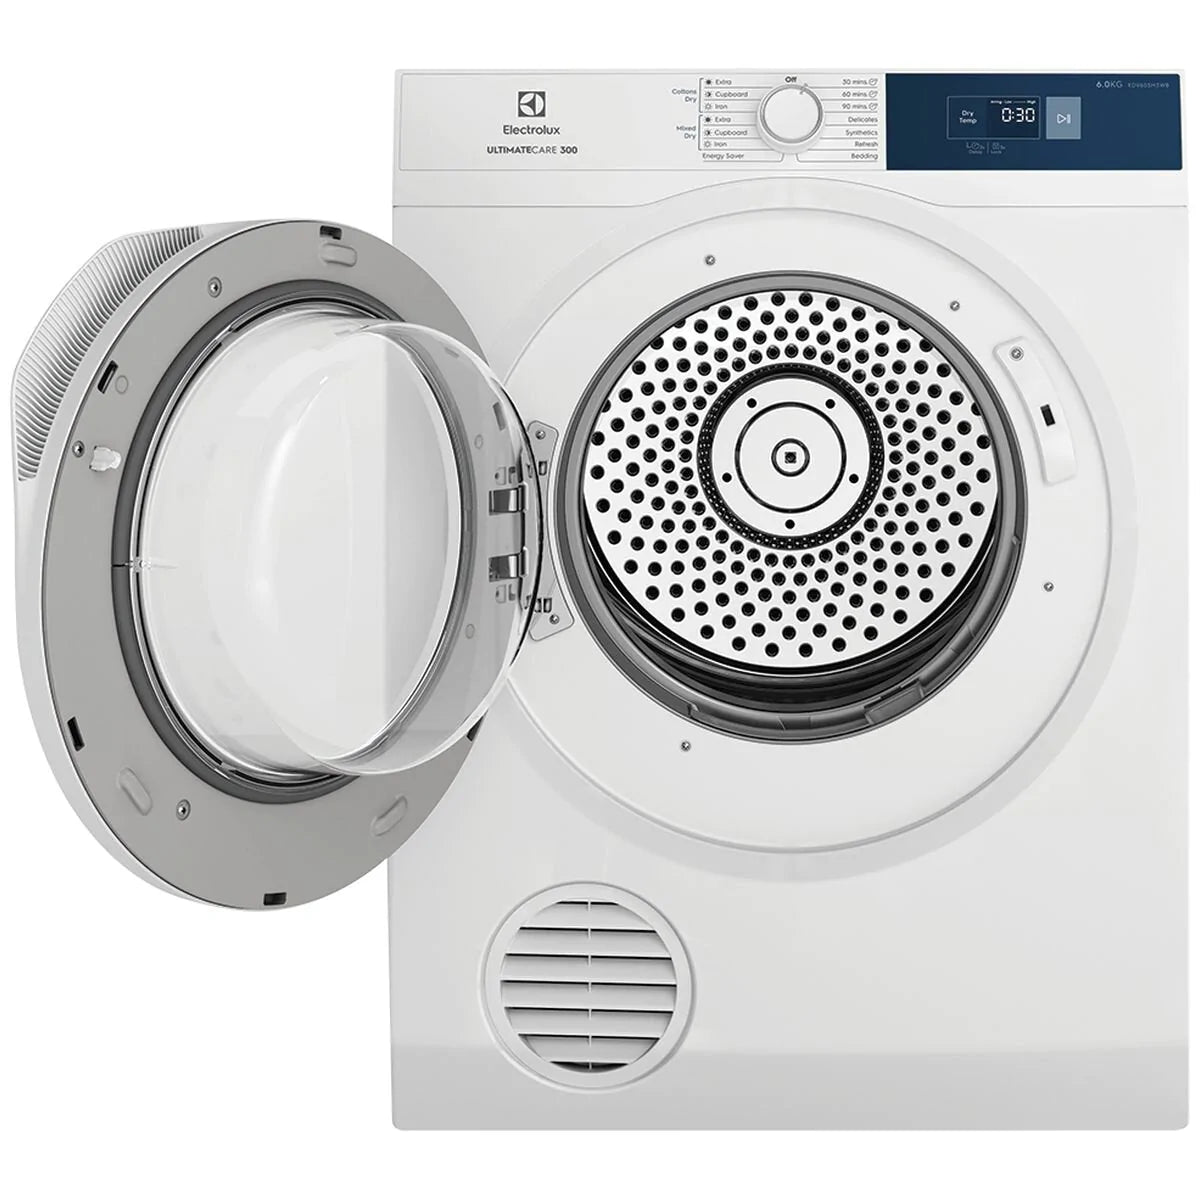 Electrolux 6kg Vented Dryer - Brisbane Home Appliances